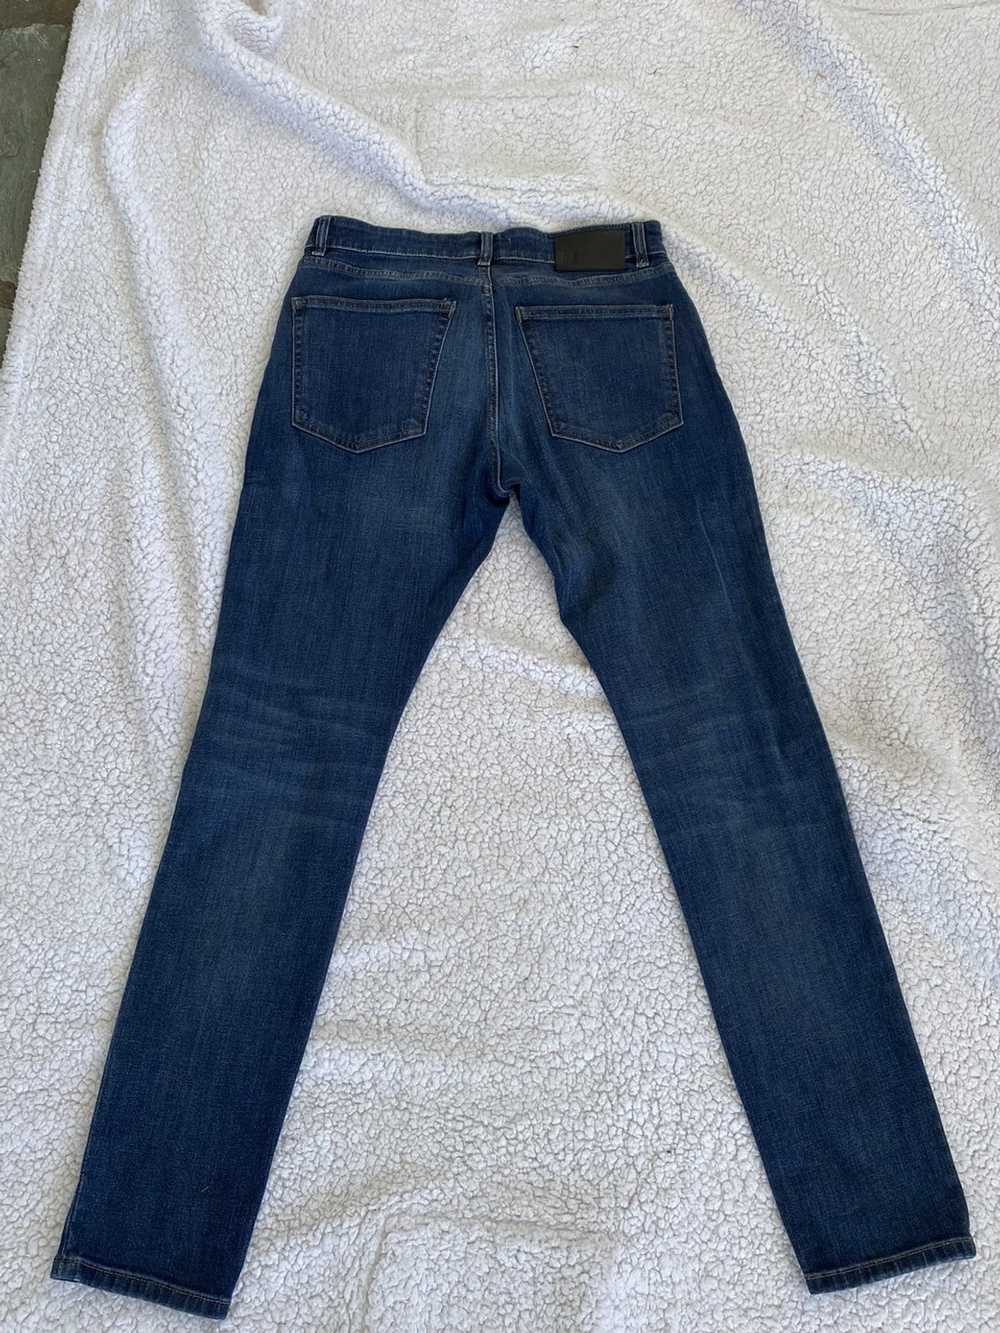 Dl1961 DL1961 “Hunter Skinny” Blue Jeans. 32 Wais… - image 5